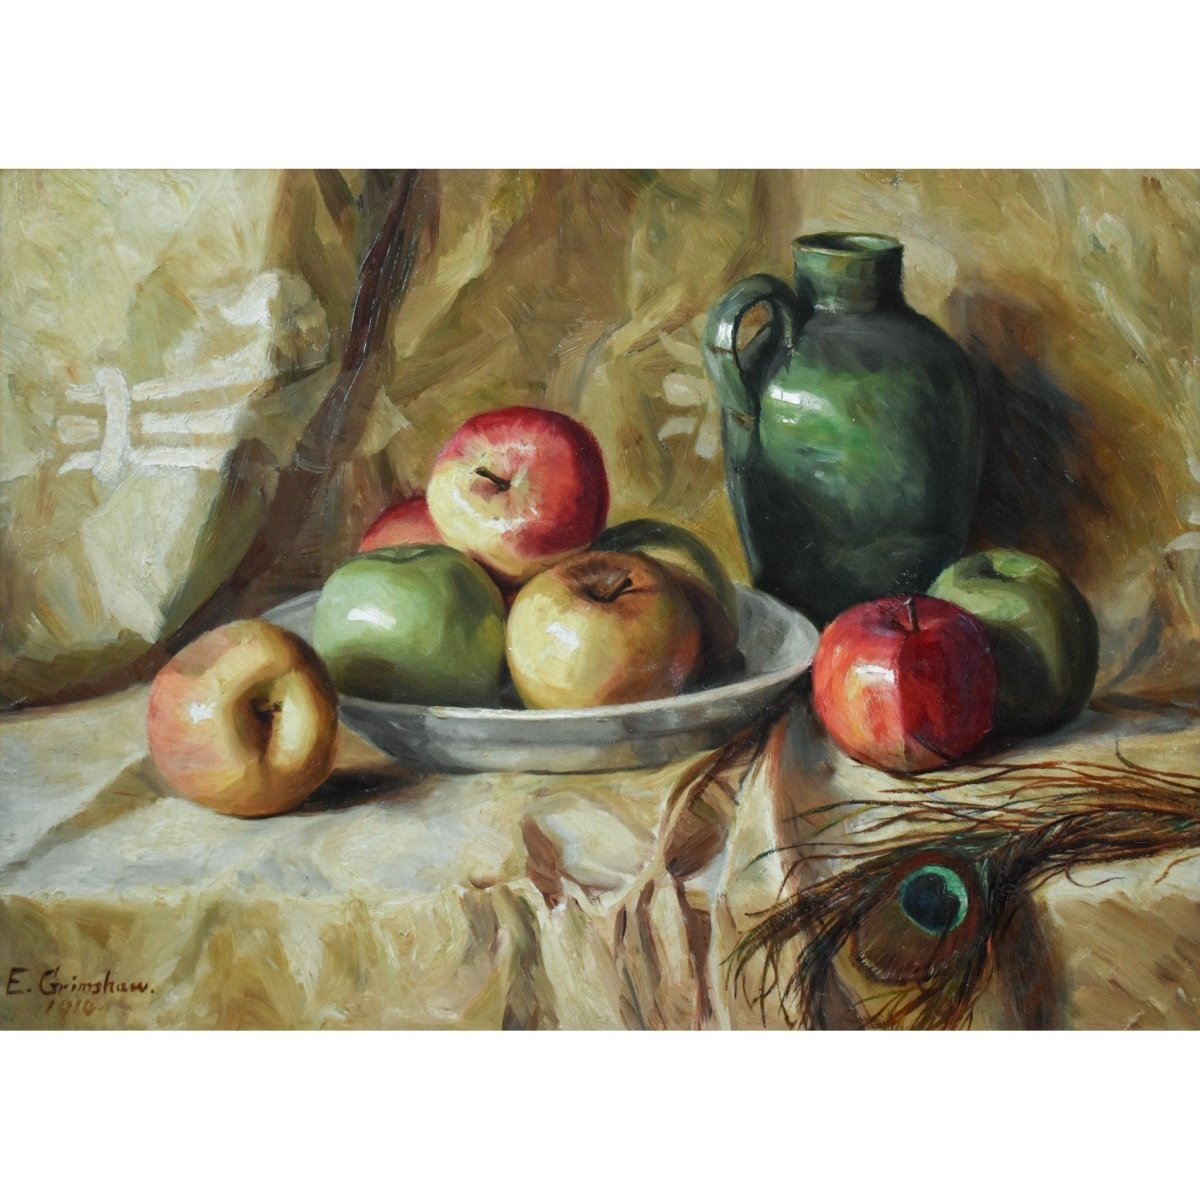 Elaine Grimshaw – Still Life with Apples - Winckelmann Gallery